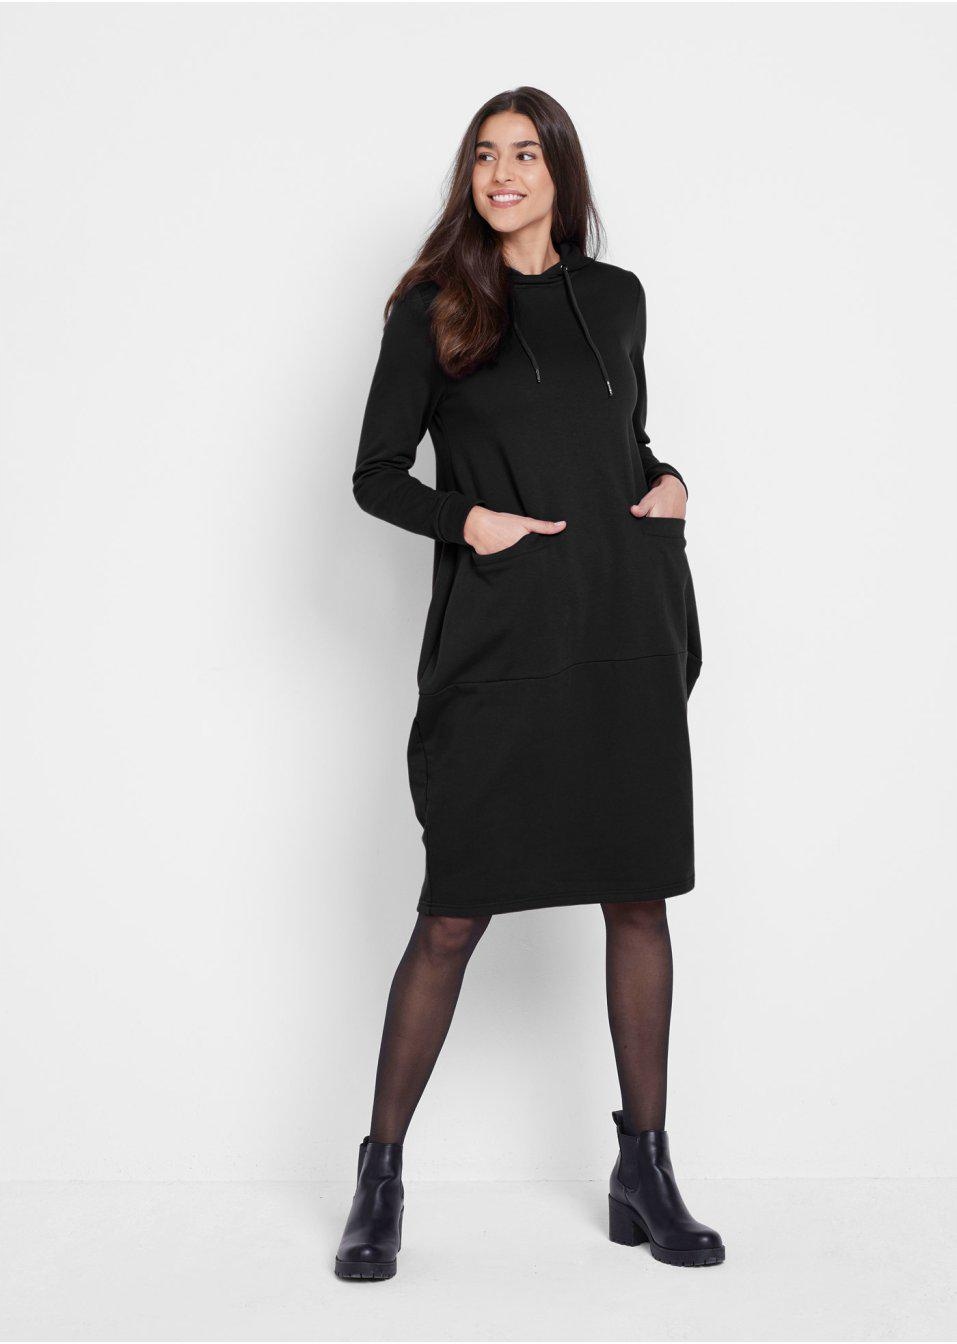 Sukienki Bonprix midi czarne - Największy wybór sukienek - Allegro.pl